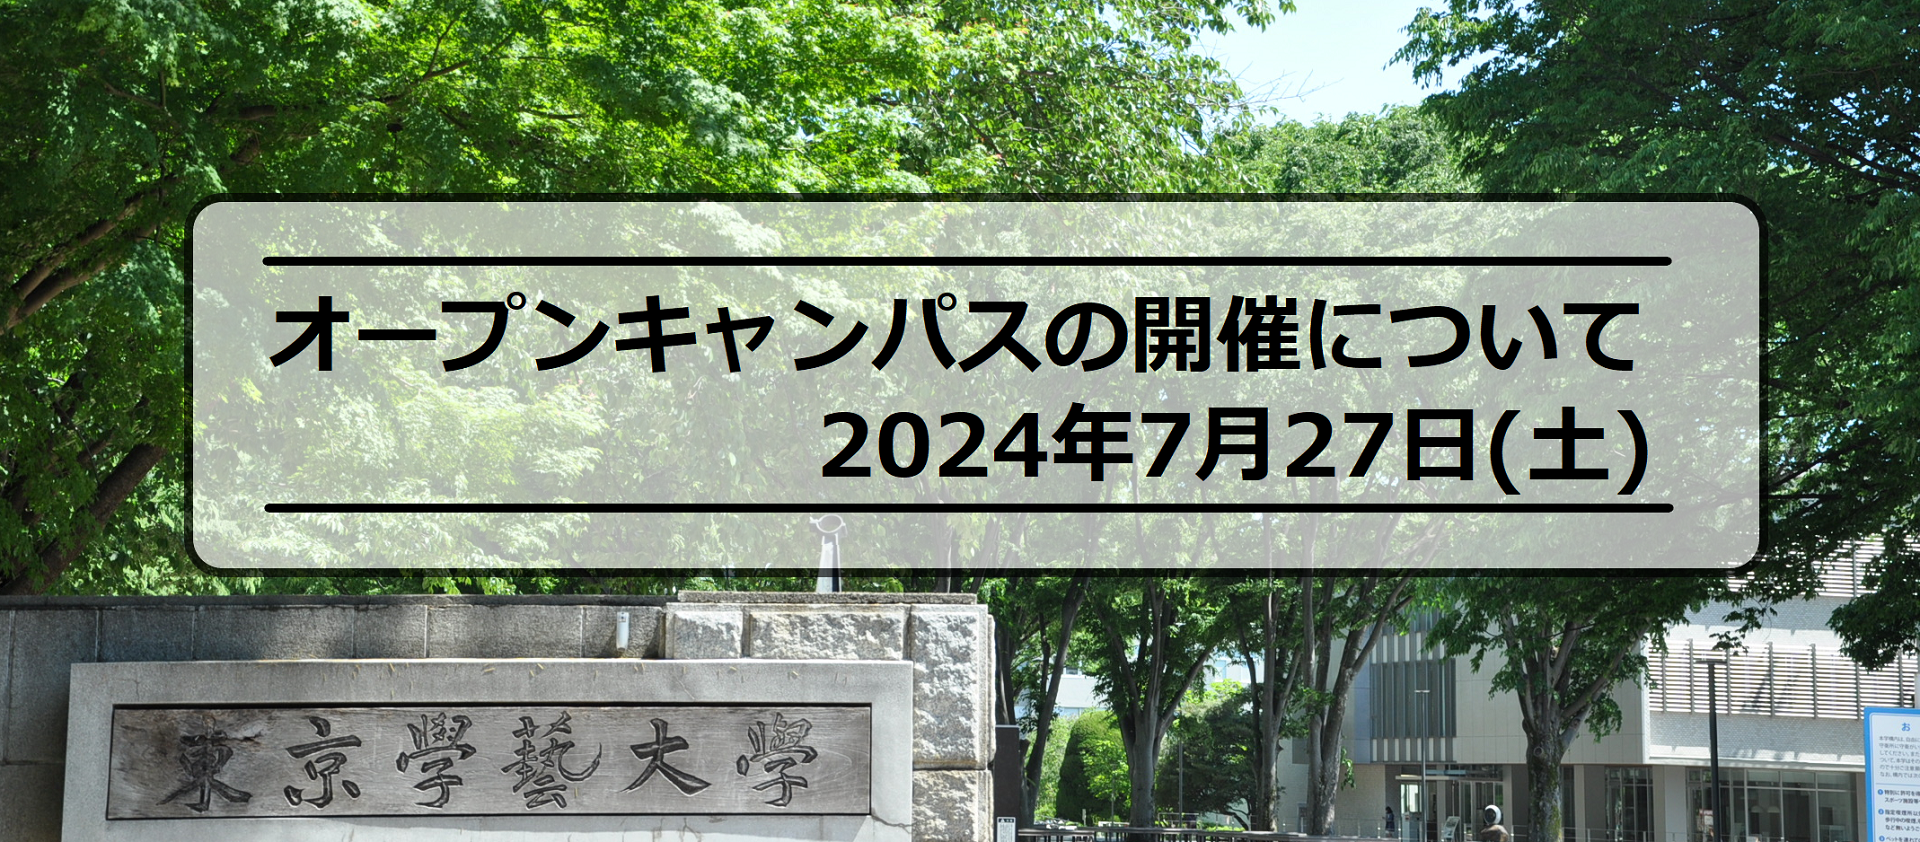 【予告】2024年度オープンキャンパスの開催について